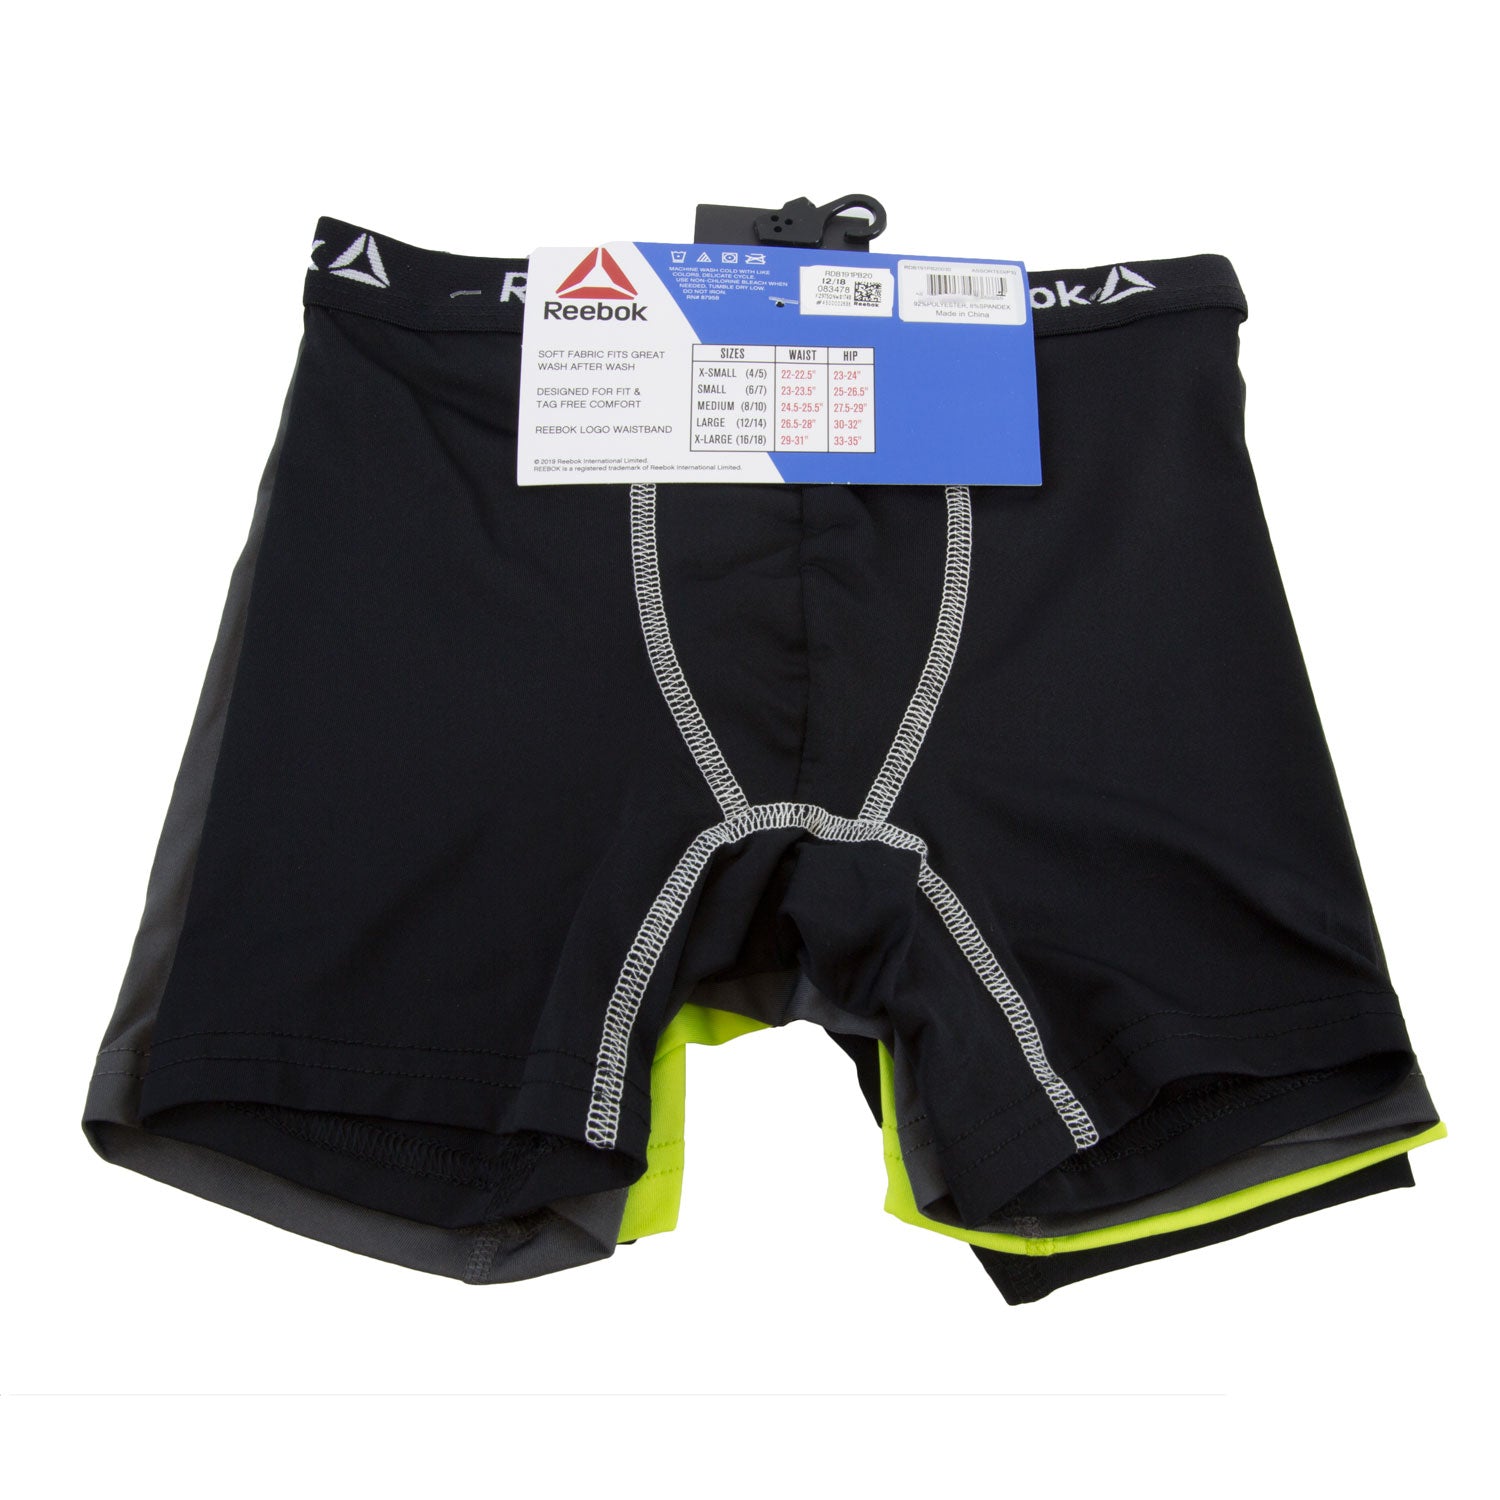 Reebok Boys Underwear Performance Boxer Briefs, Medium, 5-Pack